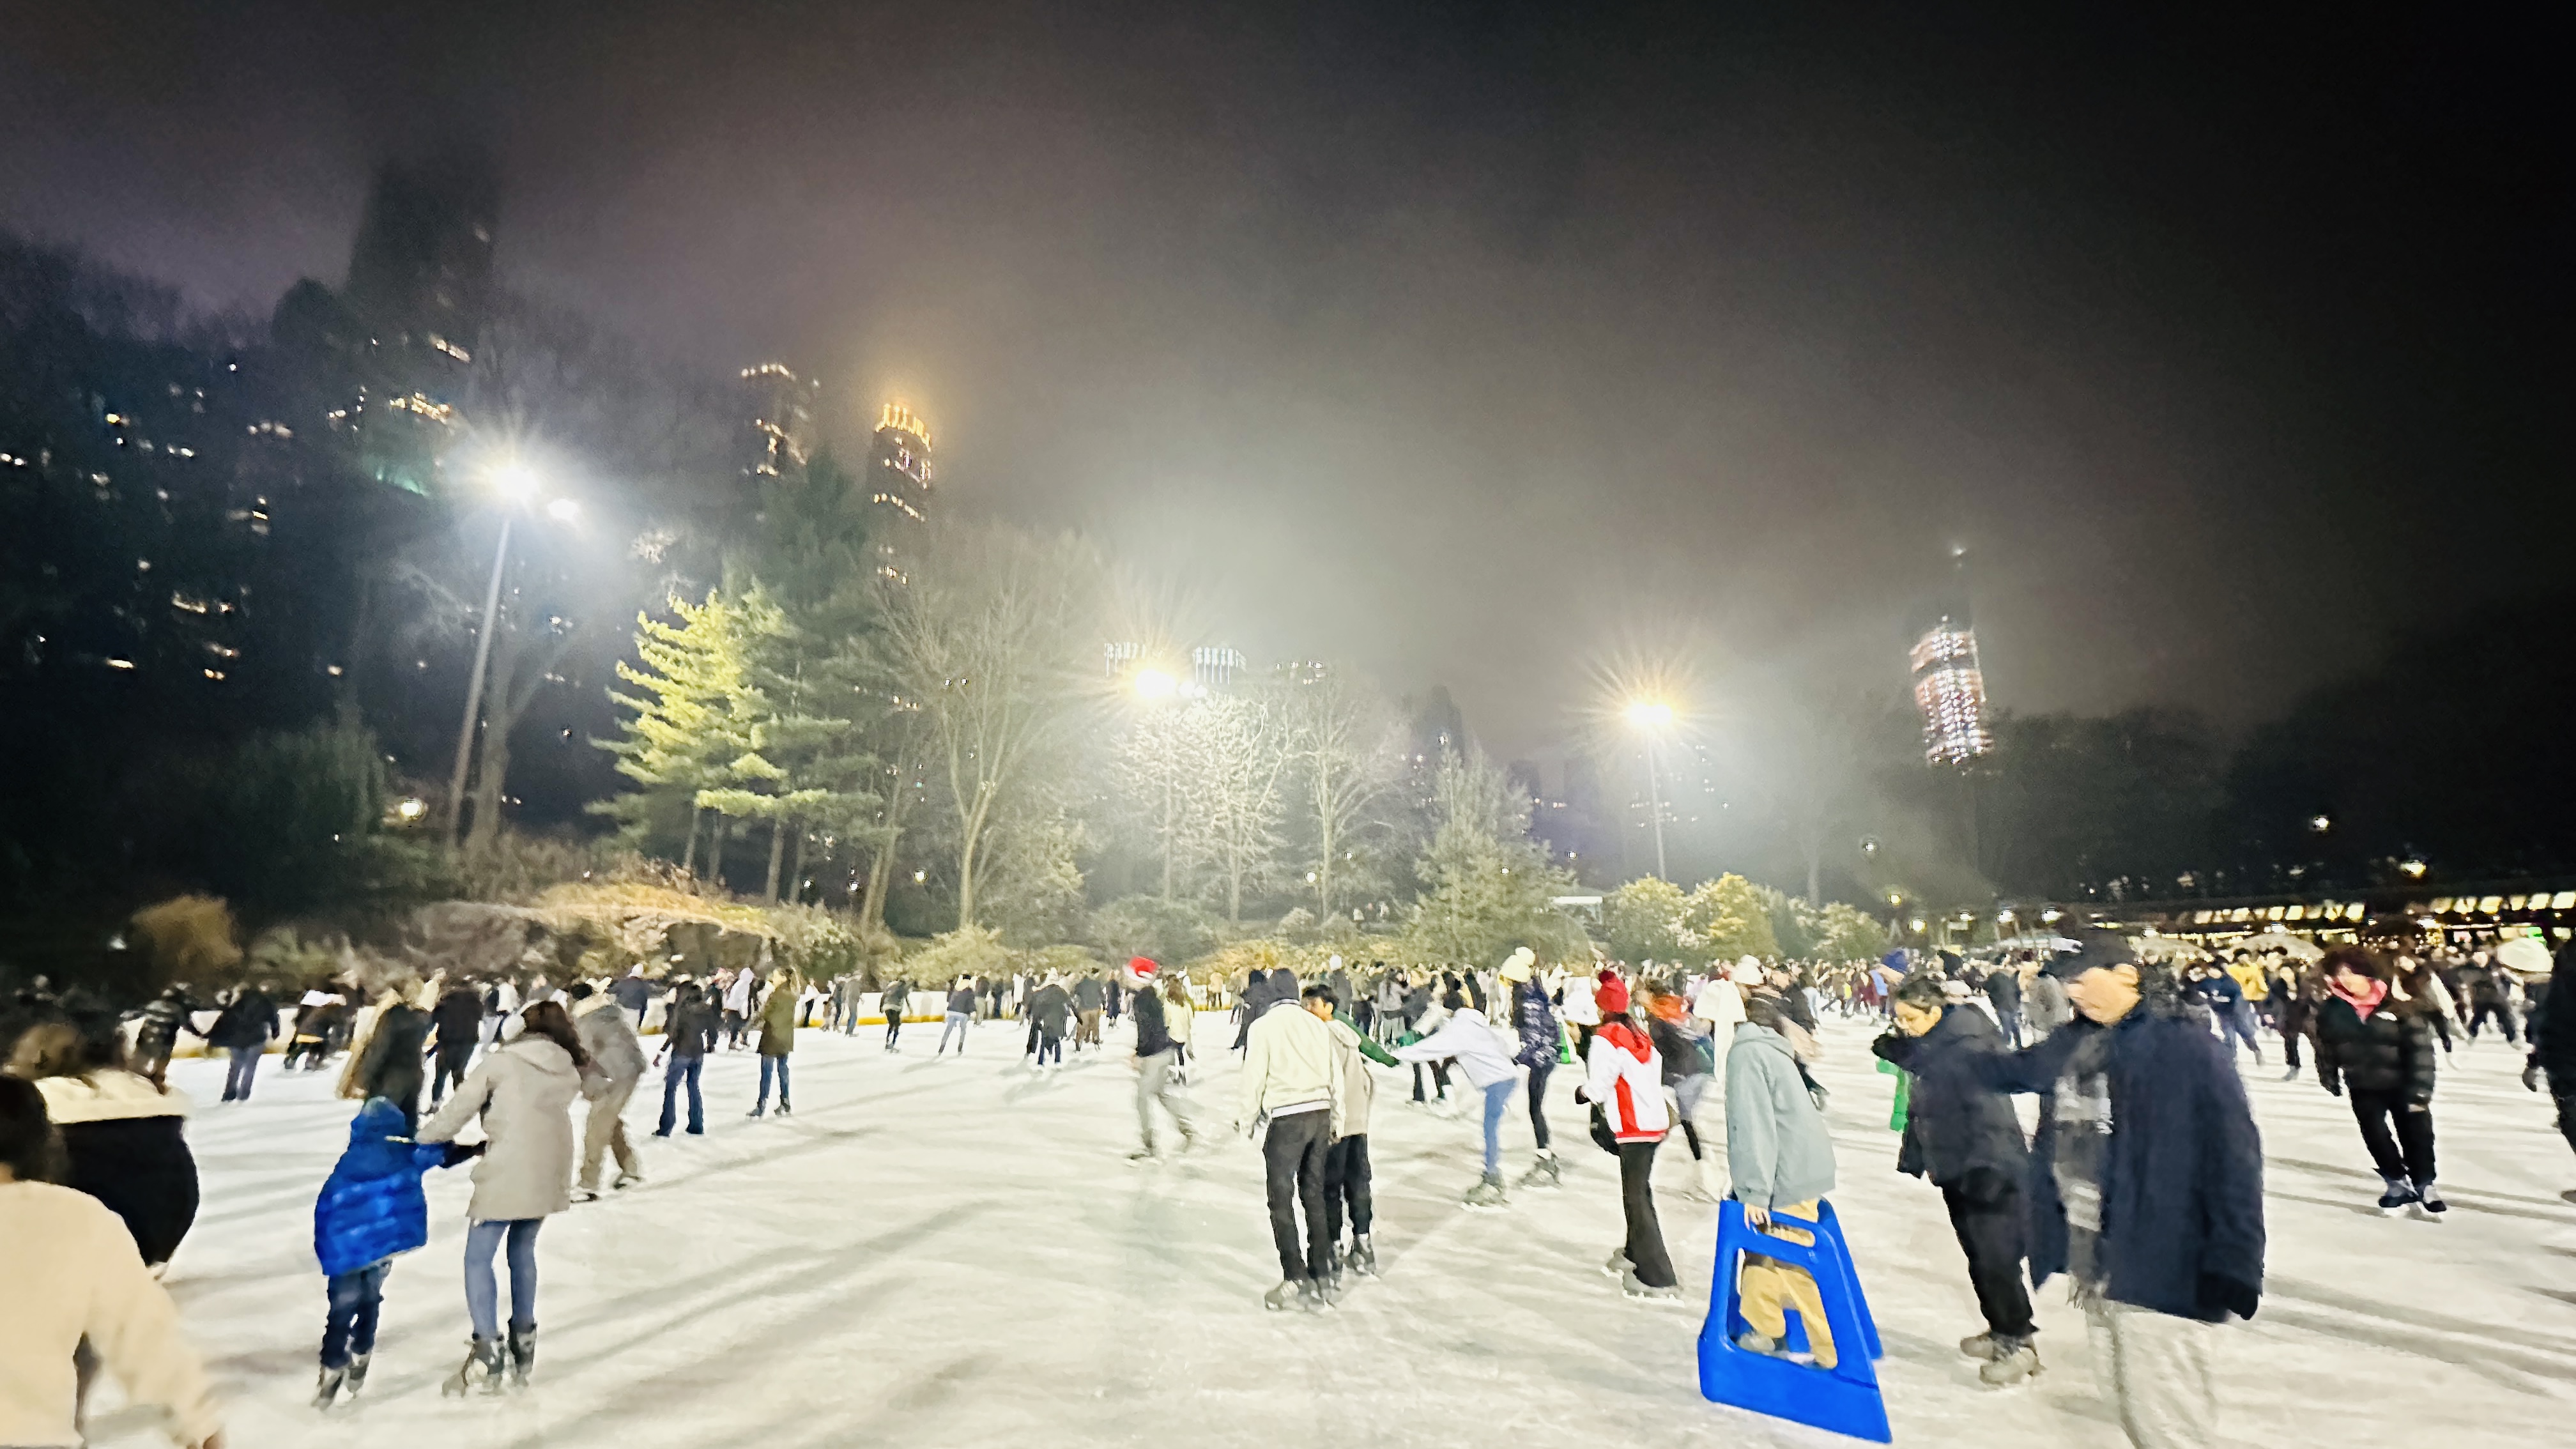 뉴욕 겨울 여행 필수 코스 2: 센트럴 파크, 아이스 스케이트장, 울먼 링크(Wollman Rink)